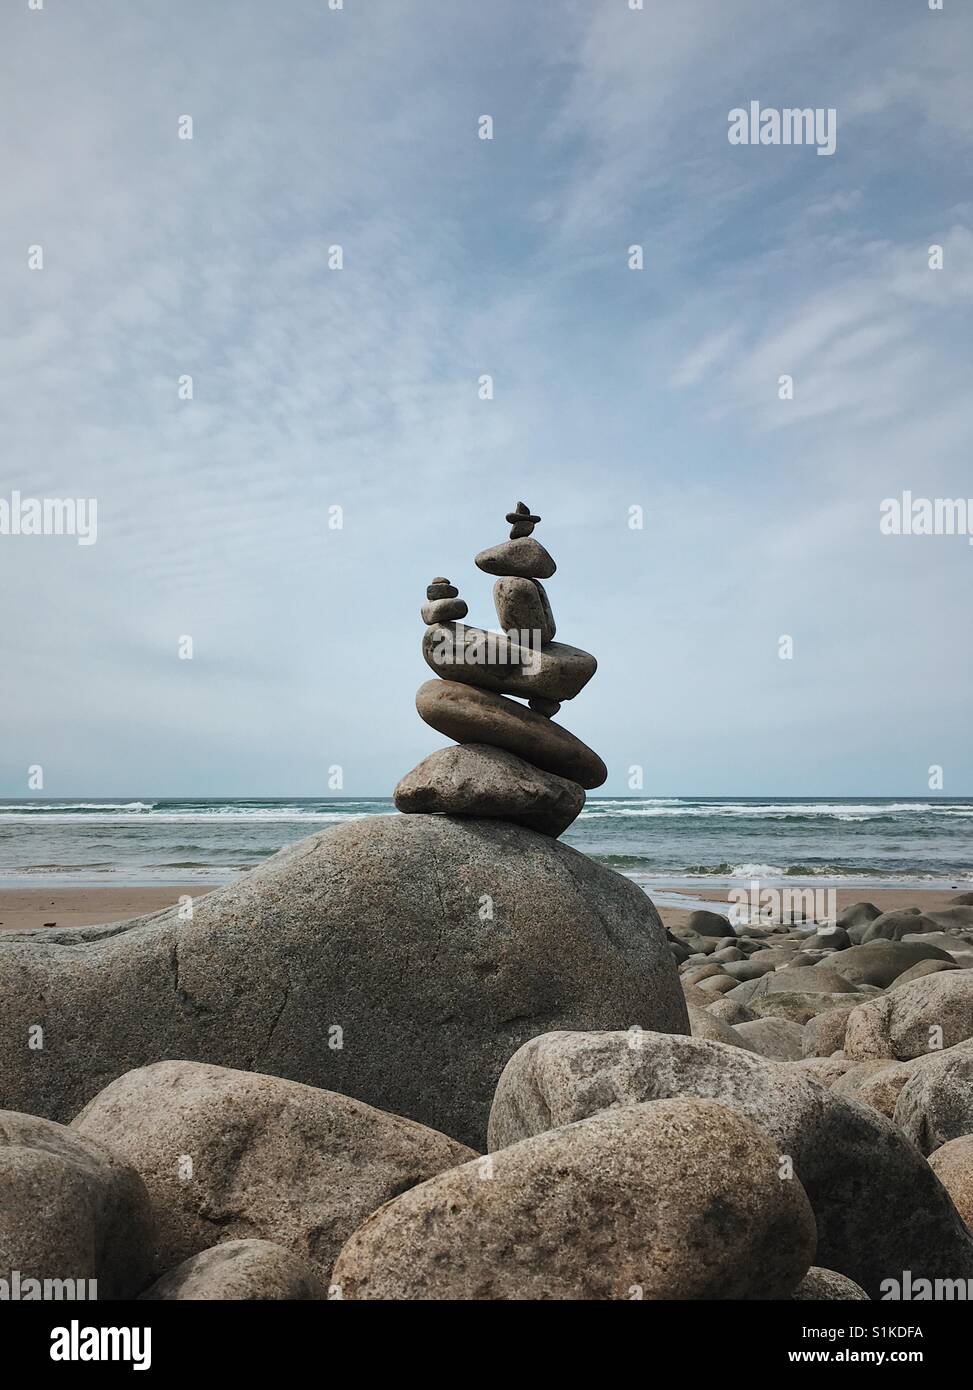 Un réseau complexe et bien équilibré cairn de pierre veille sur la plage. Banque D'Images